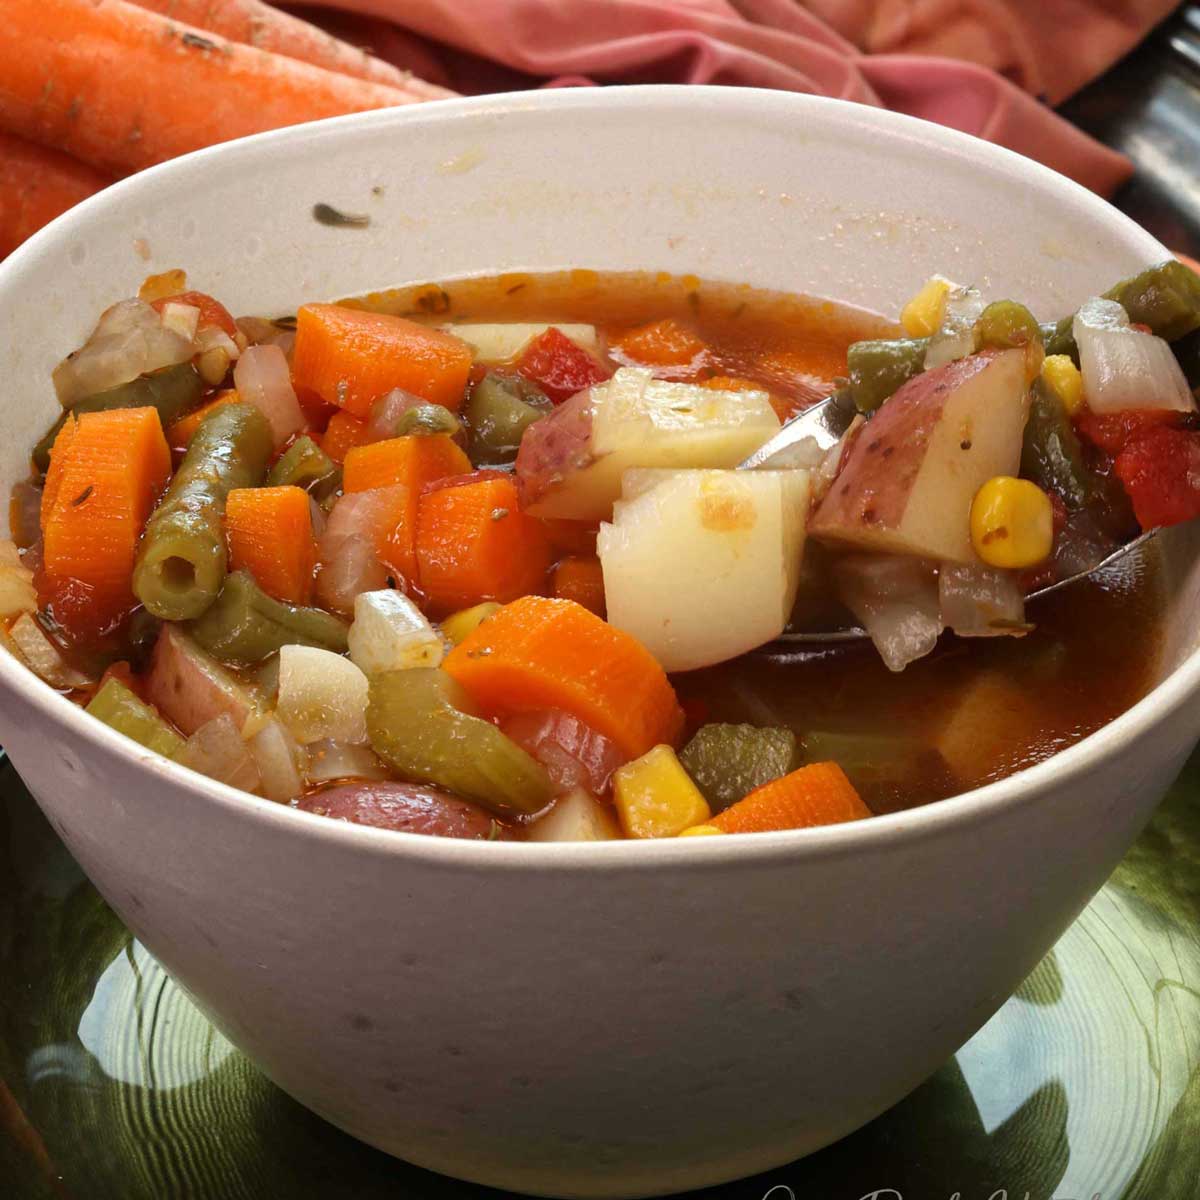 9 Easy Instant Pot Soups Go Go Go Gourmet